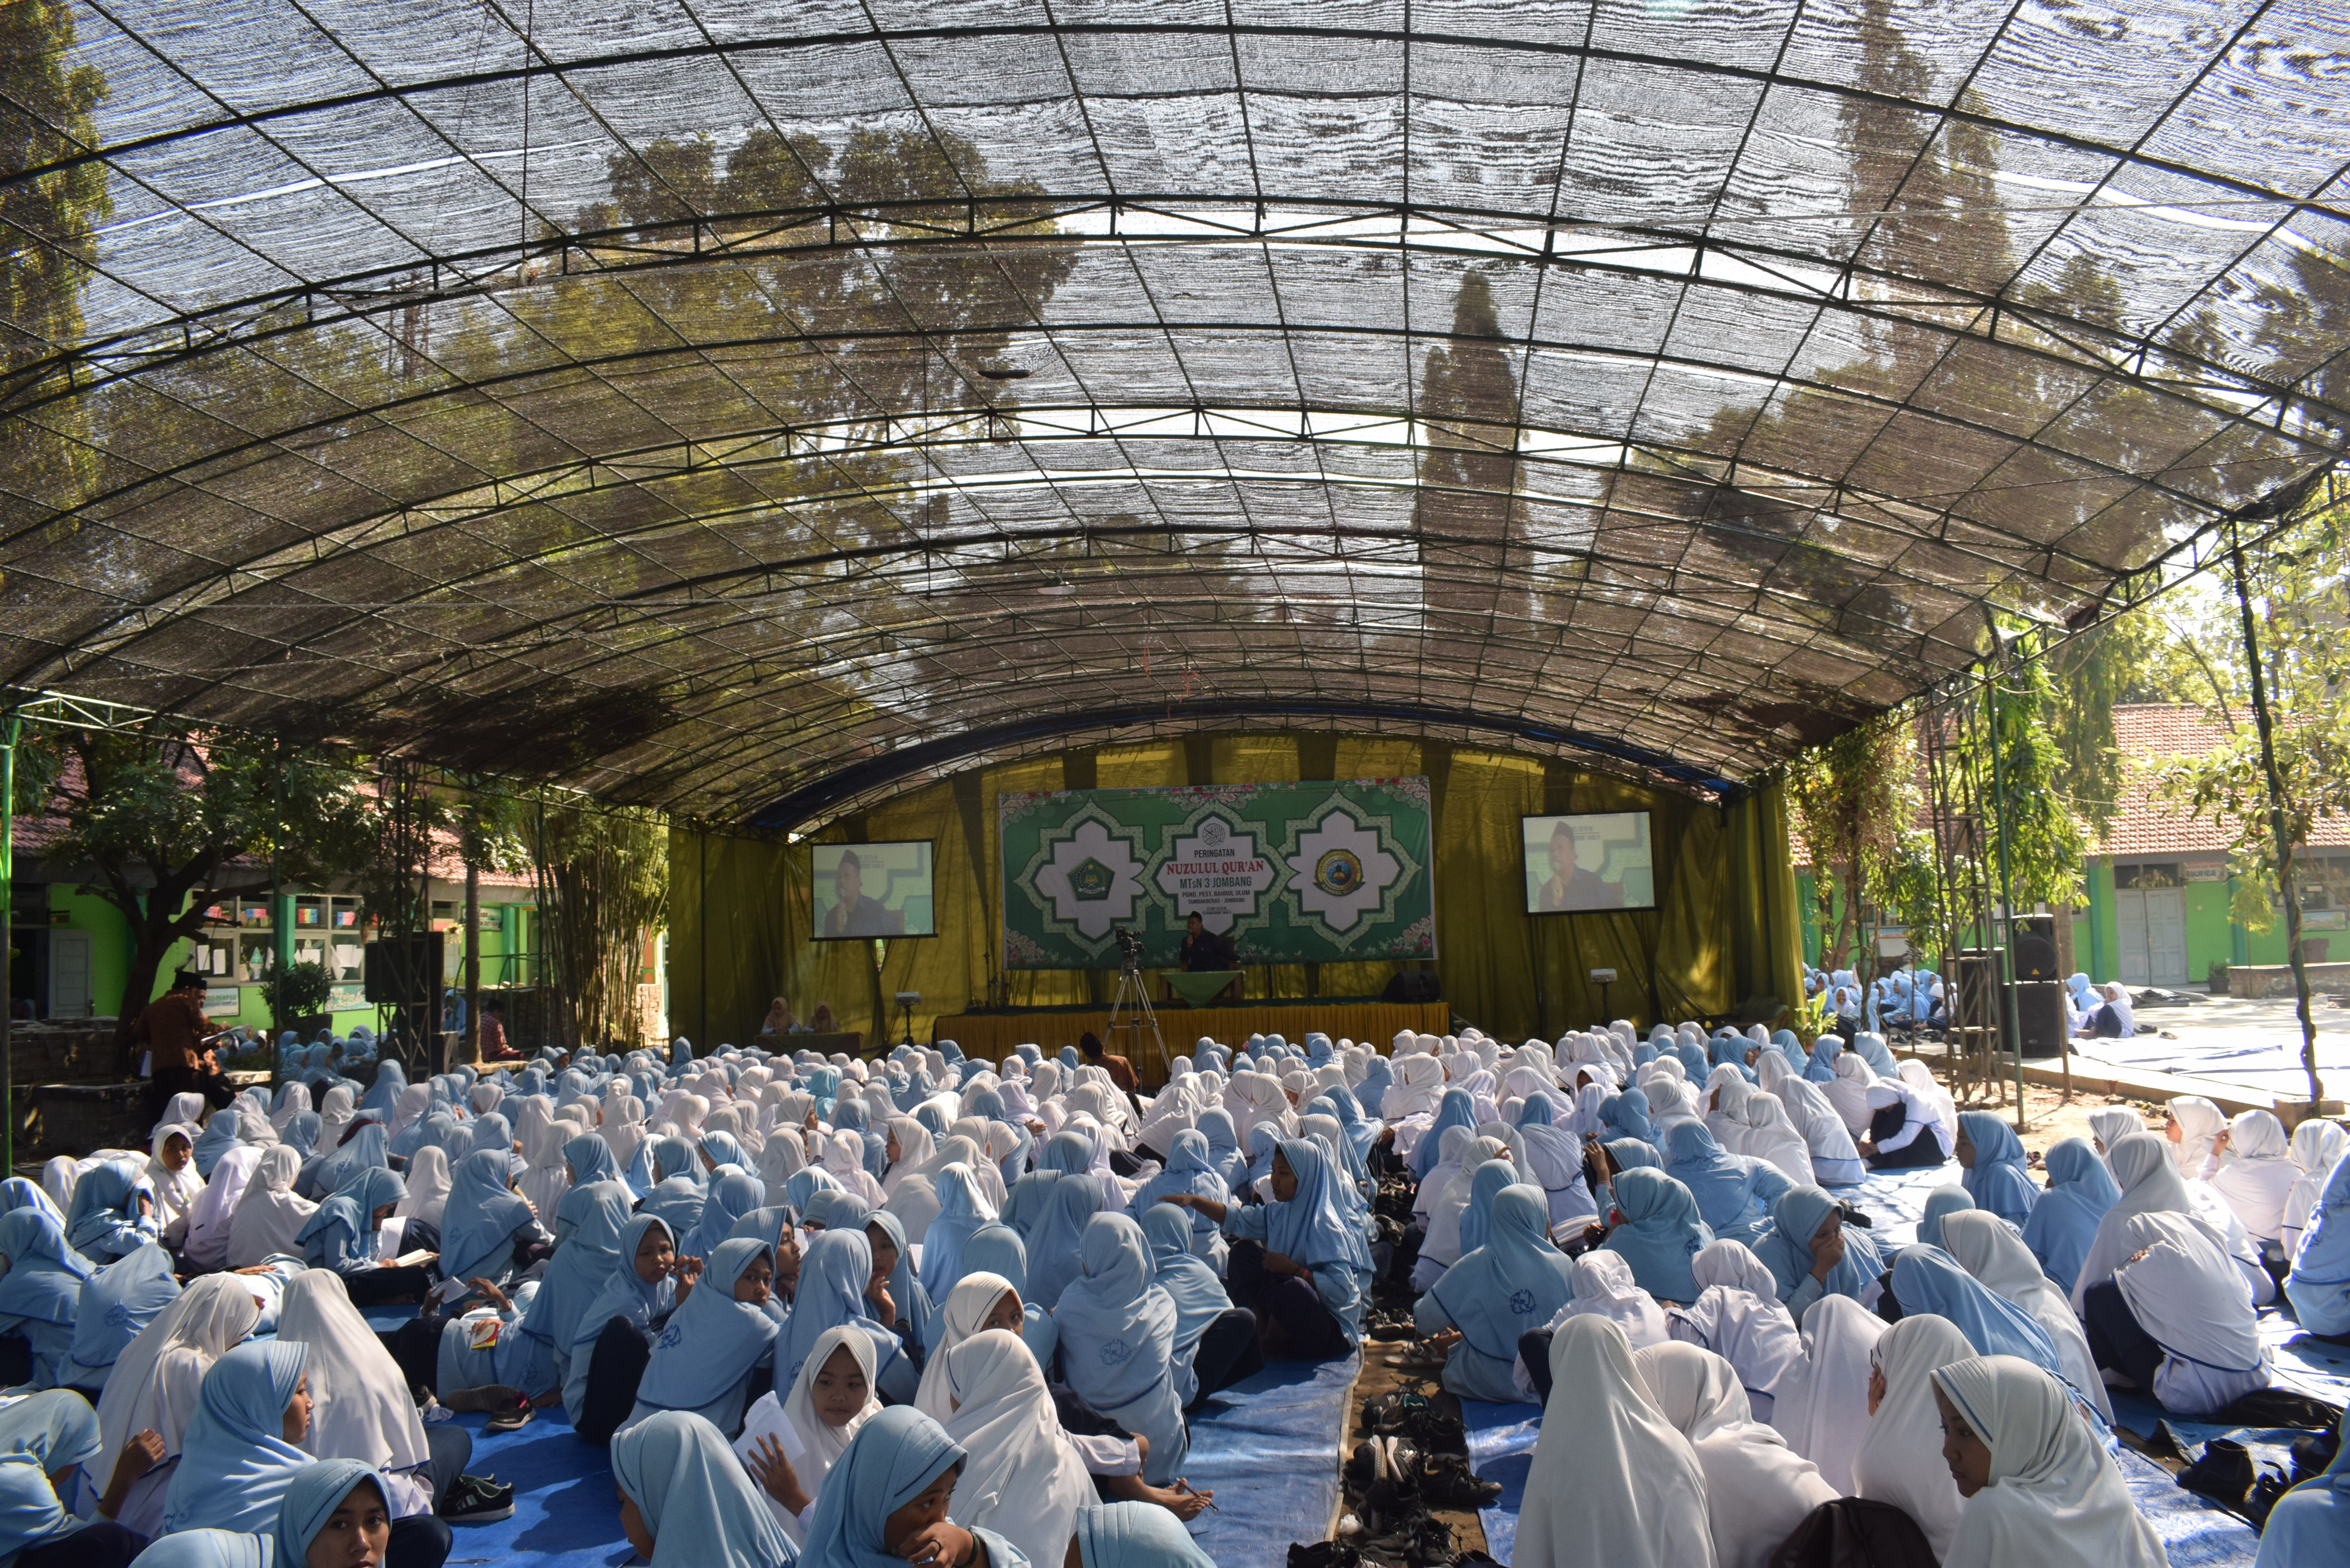 Nuzulul Qur'an Wujudkan Kebersamaan di MTsN 3 Jombang